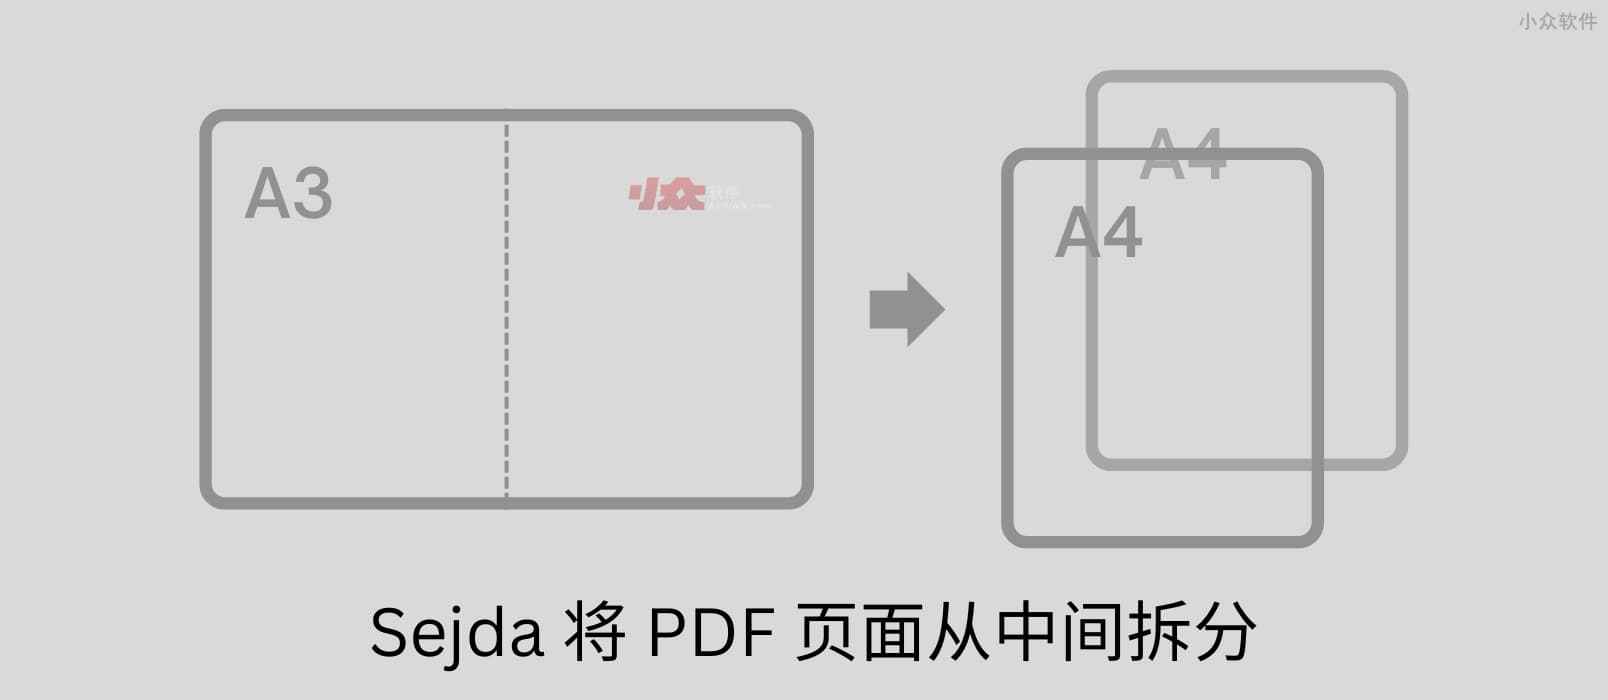 Sejda - 将 PDF 页面从中间拆分：A3 尺寸试卷切割为 A4 尺寸，方便打印